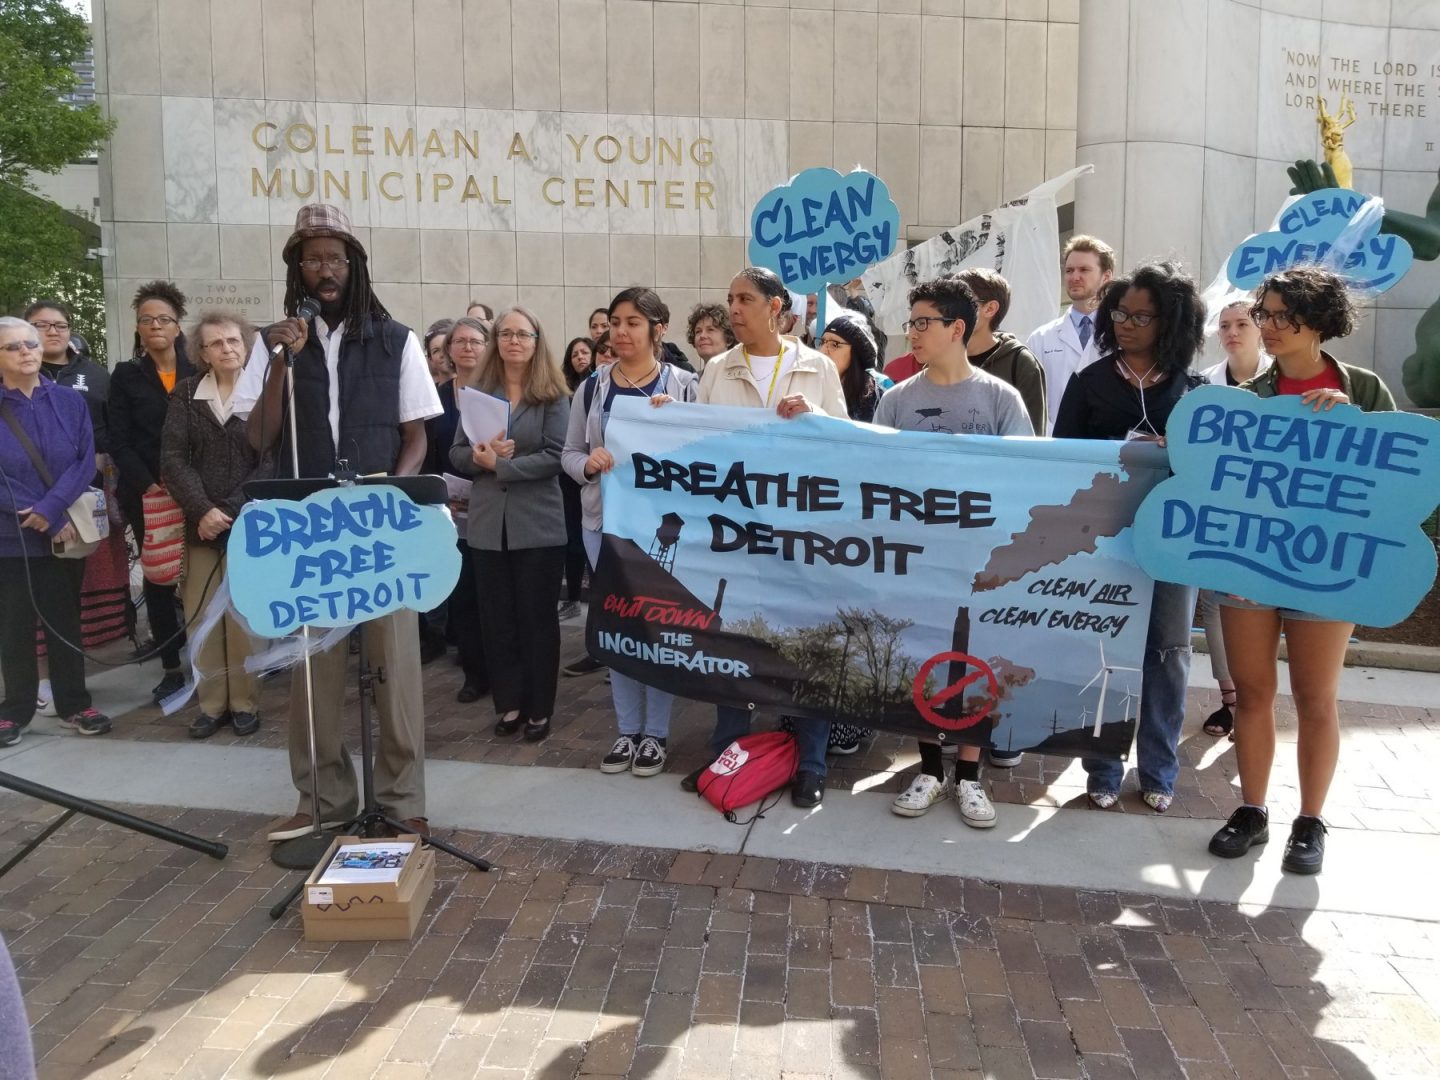 تجمع أنصار منظمة Breathe Free Detroit حول رجل يحمل ميكروفونًا.